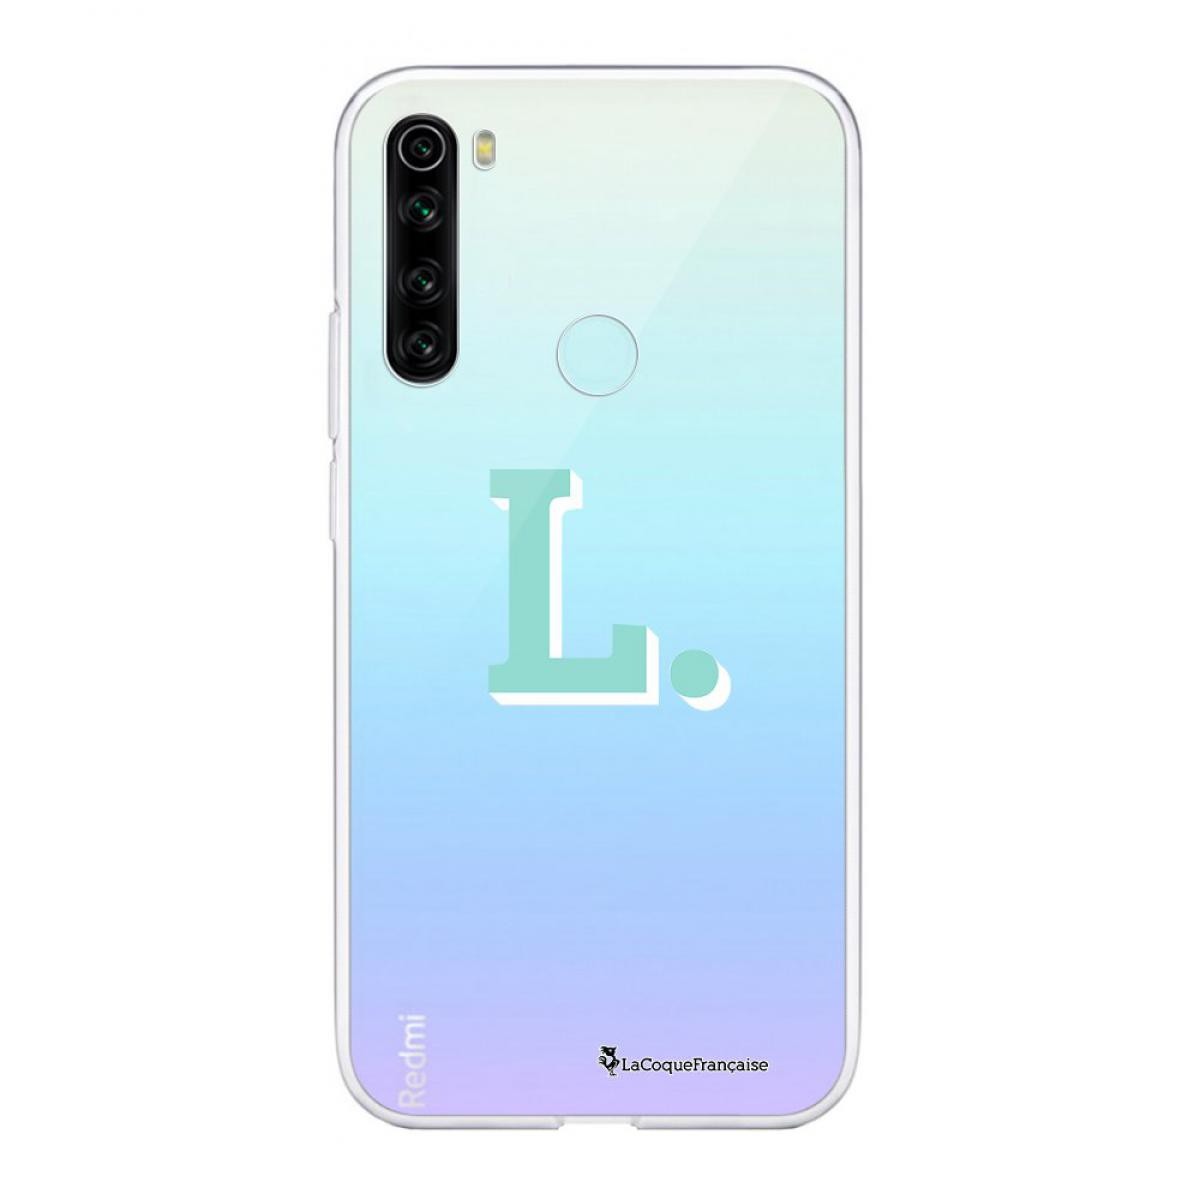 La Coque Francaise - Coque Xiaomi Redmi Note 8 T souple transparente Initiale L Motif Ecriture Tendance La Coque Francaise - Coque, étui smartphone